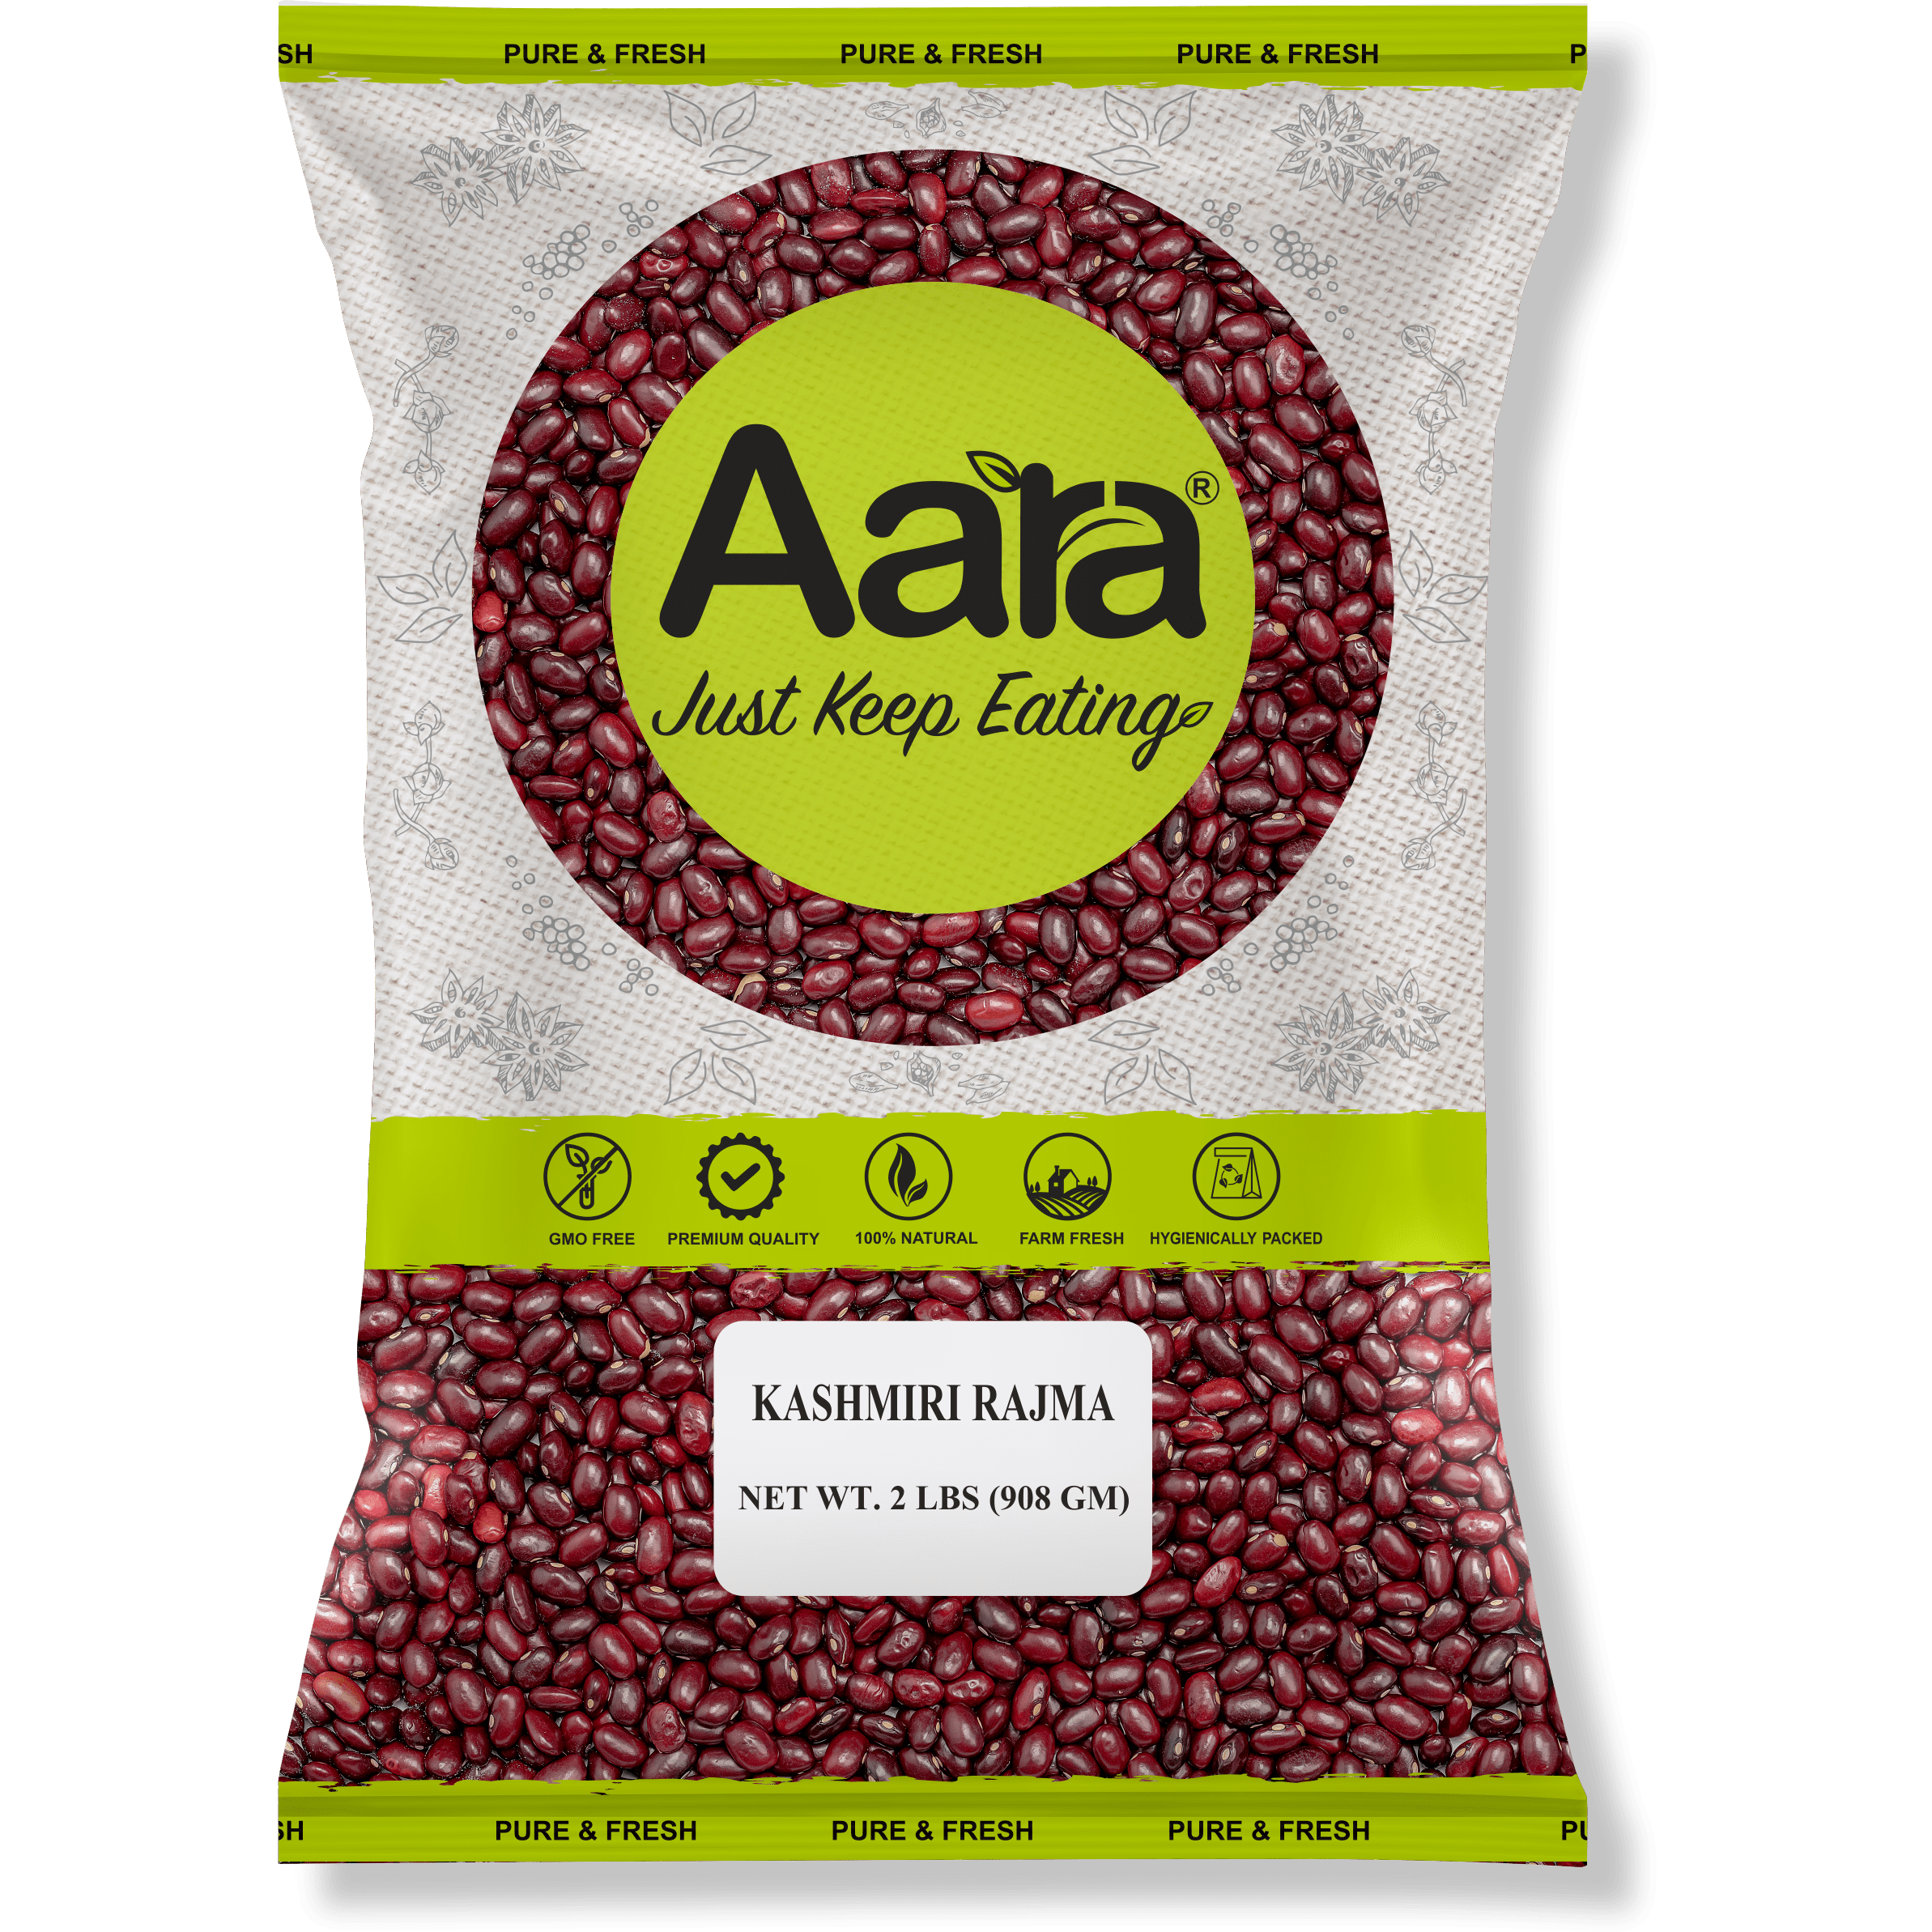 Aara Kashmiri Rajama Beans - 2 lb